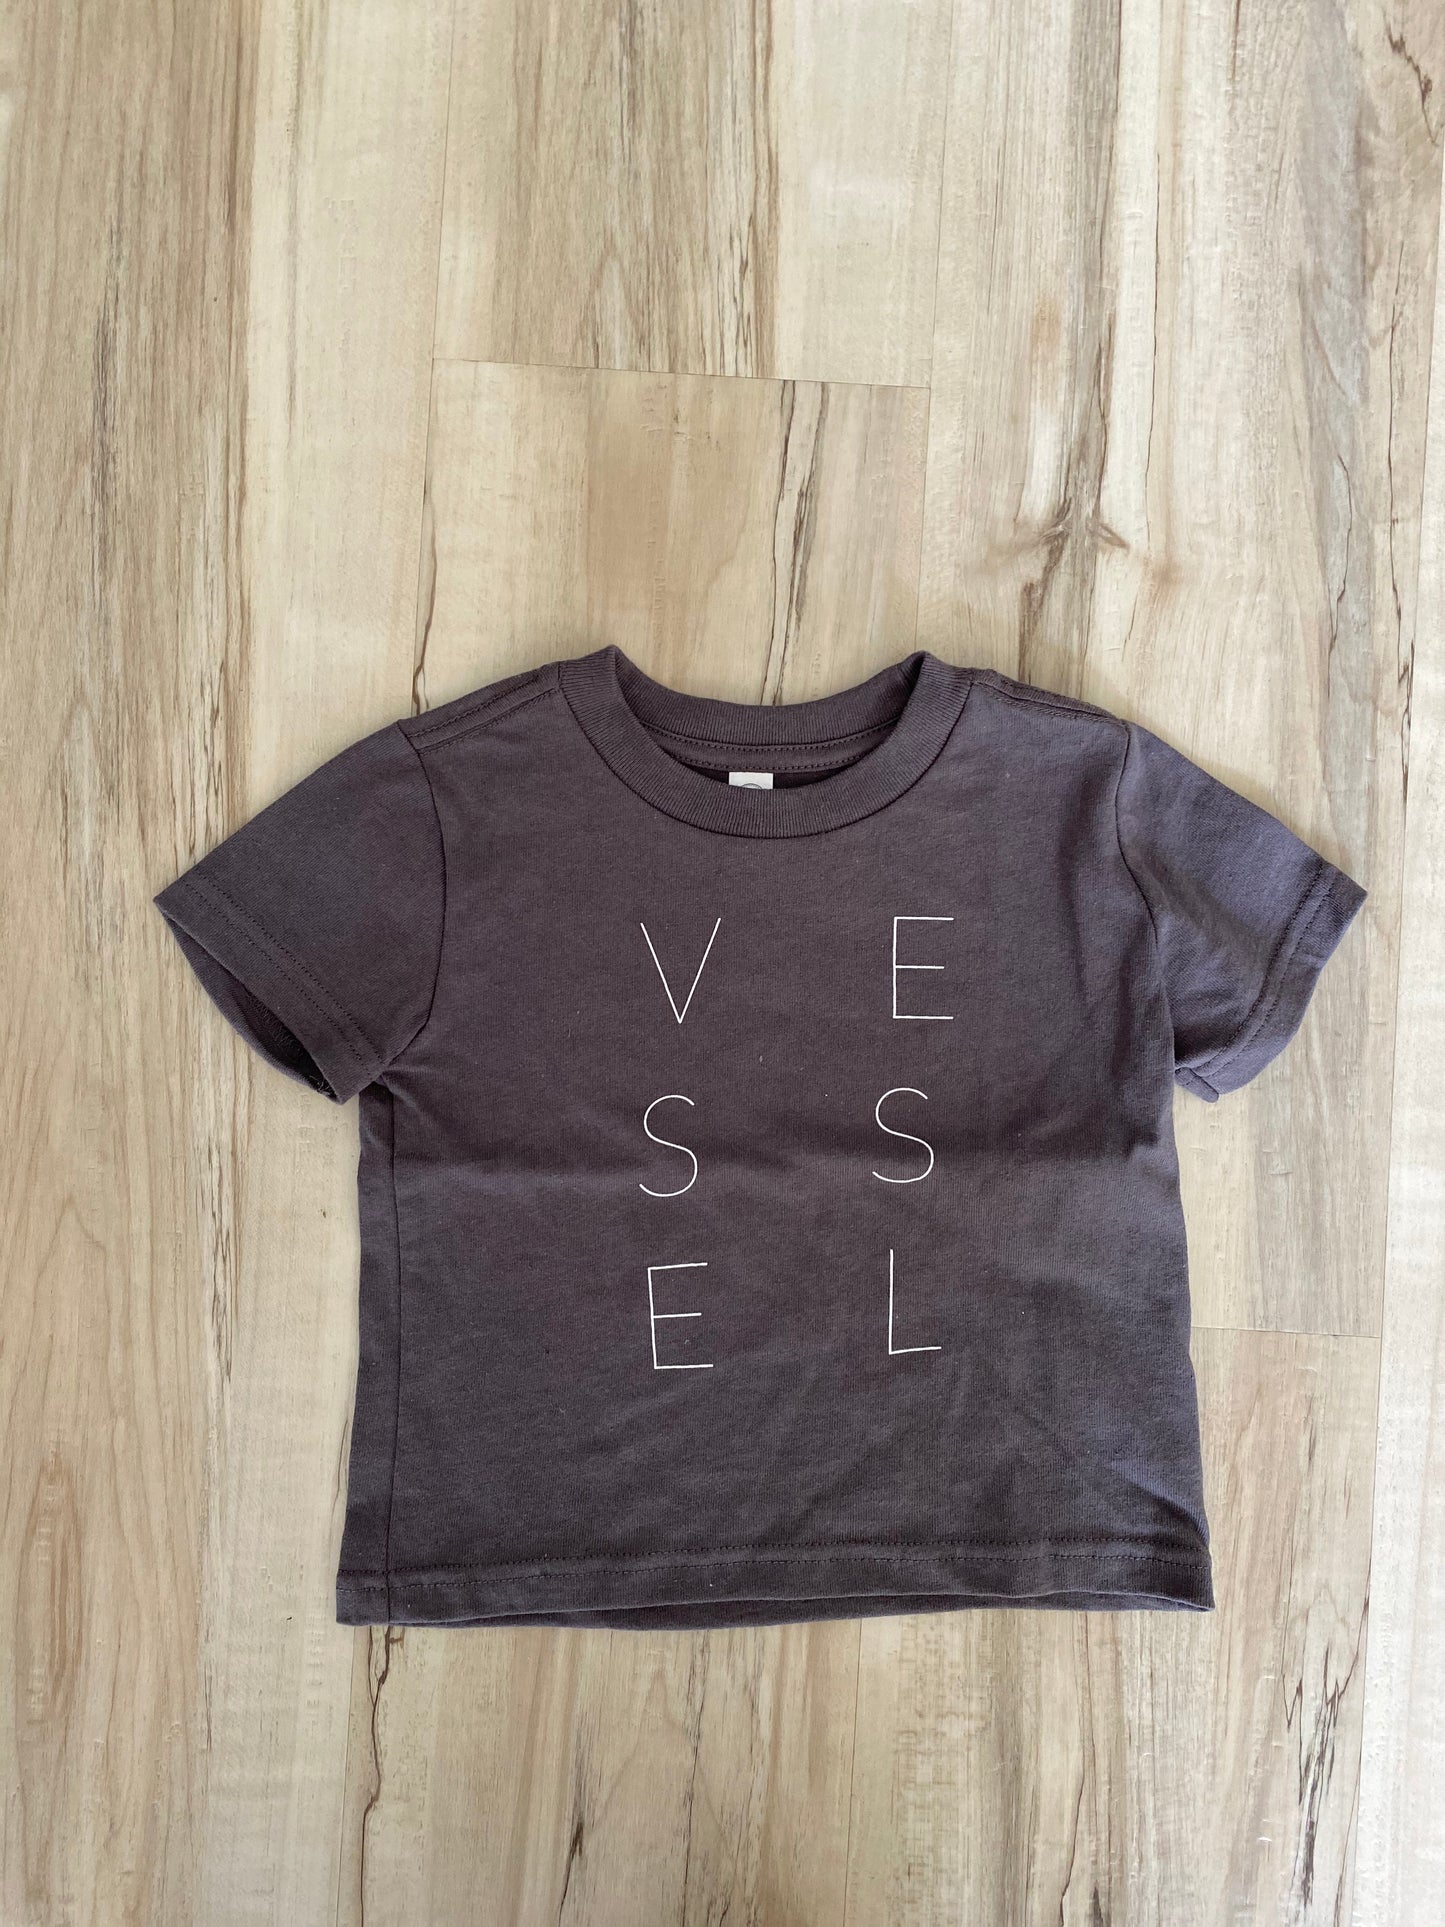 Vessel Branded Kids Tee Shirt